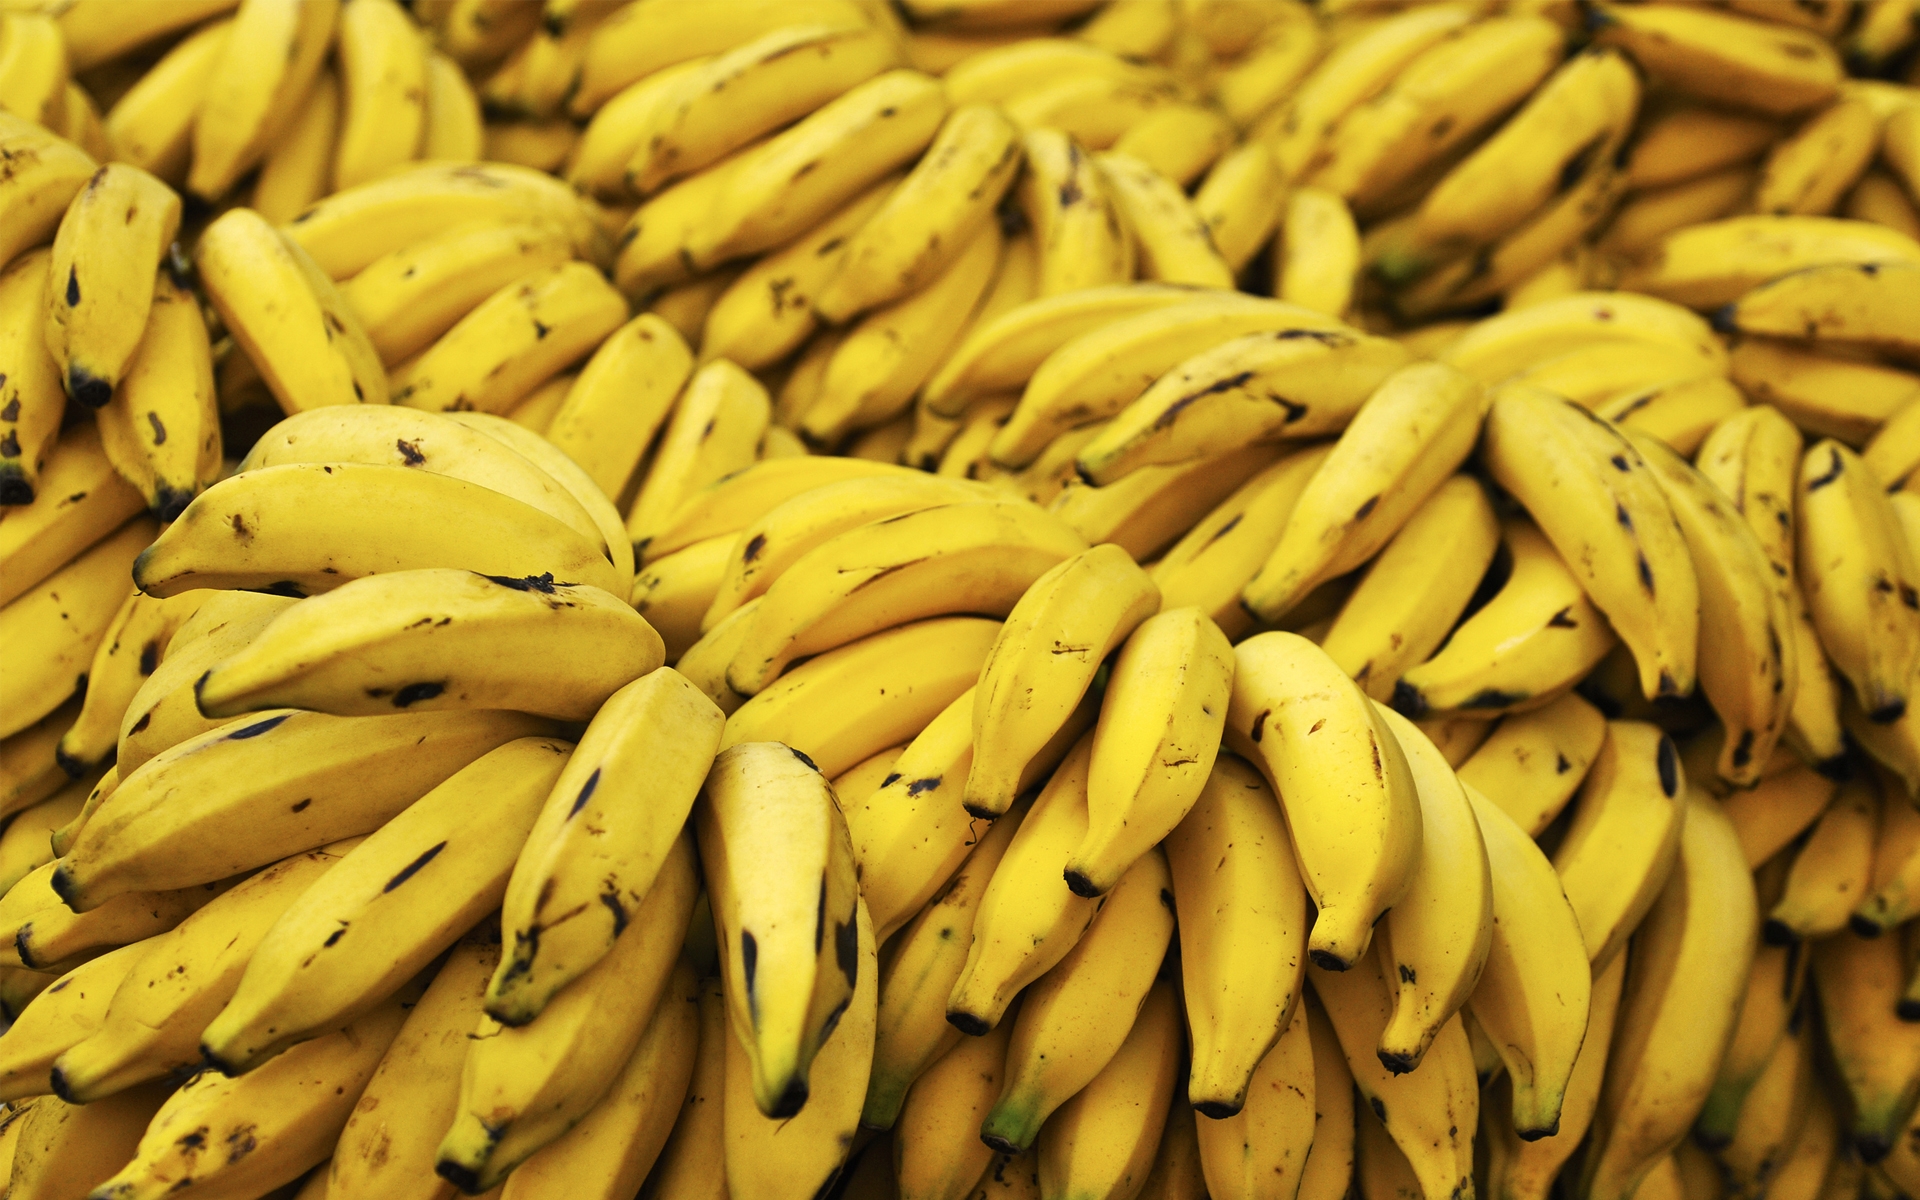 banana, fruits, food